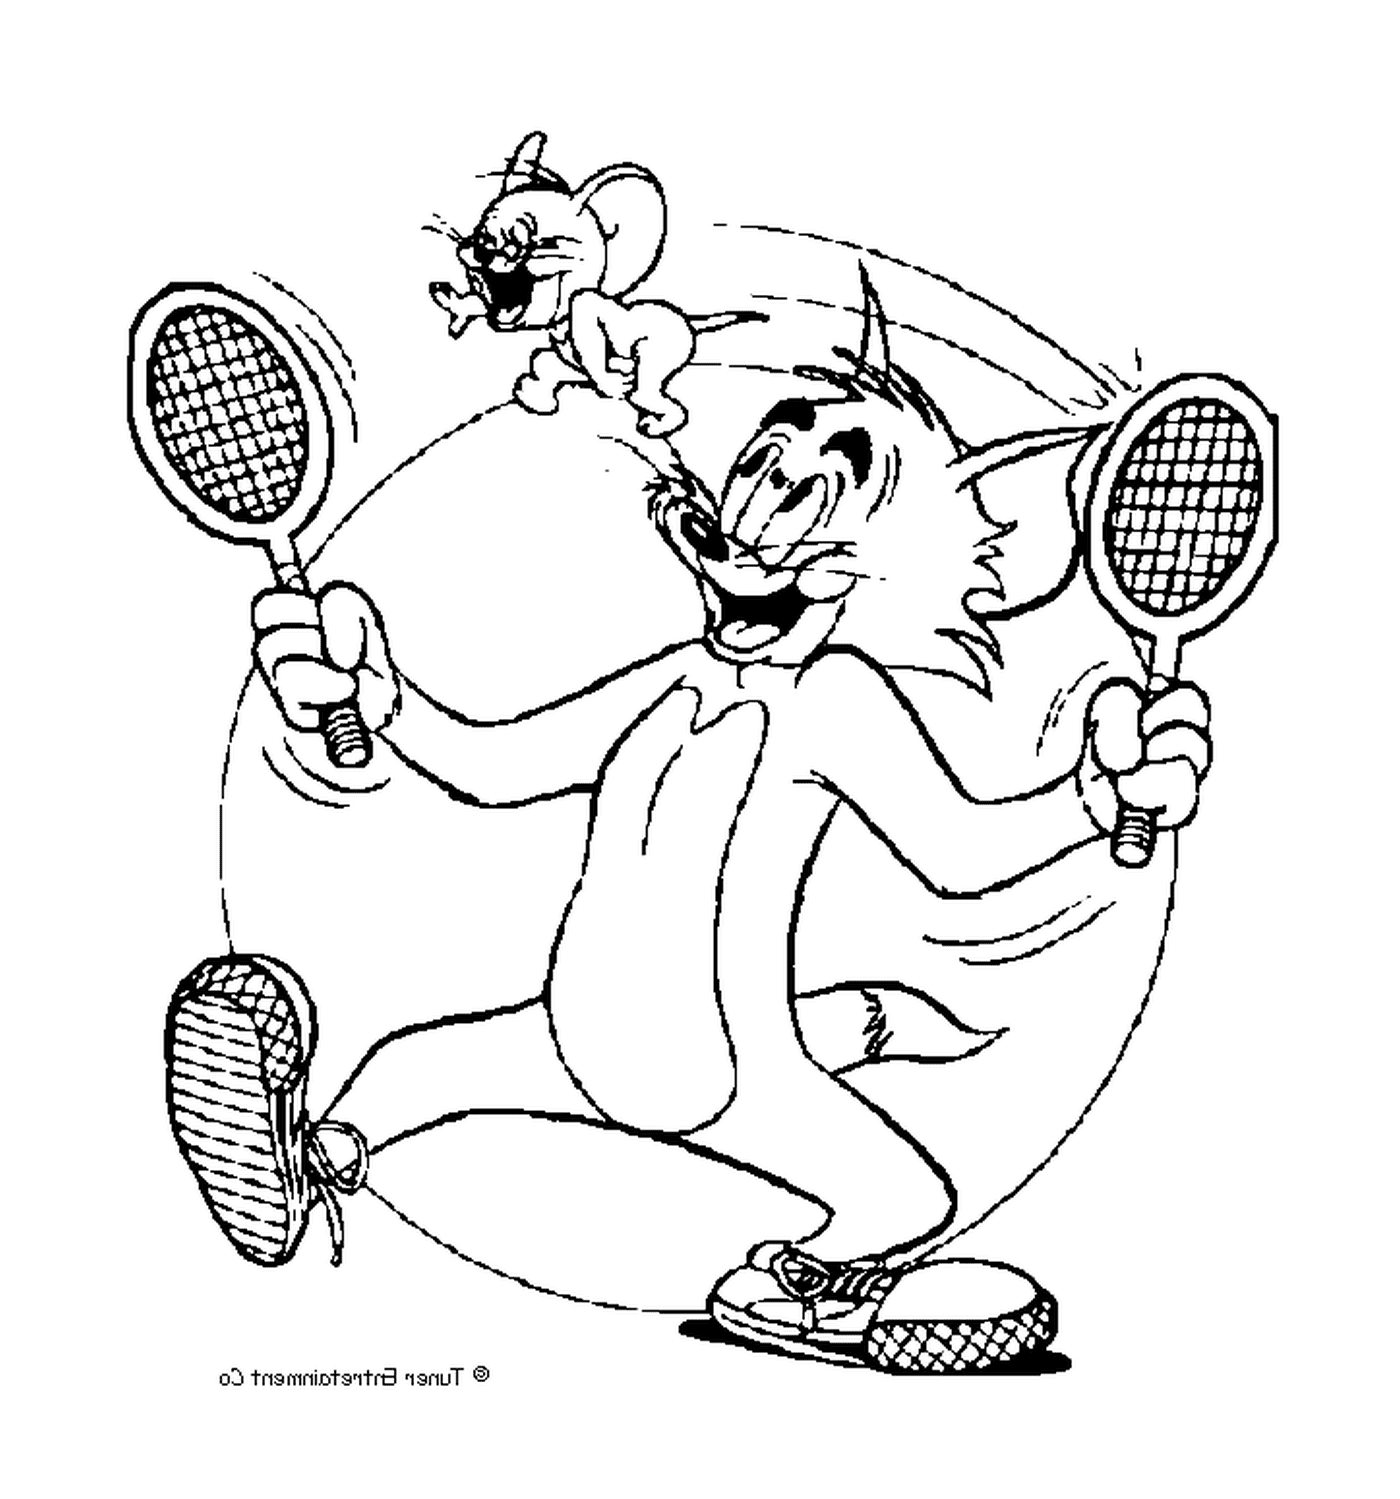  Том играет с Джерри в теннис 